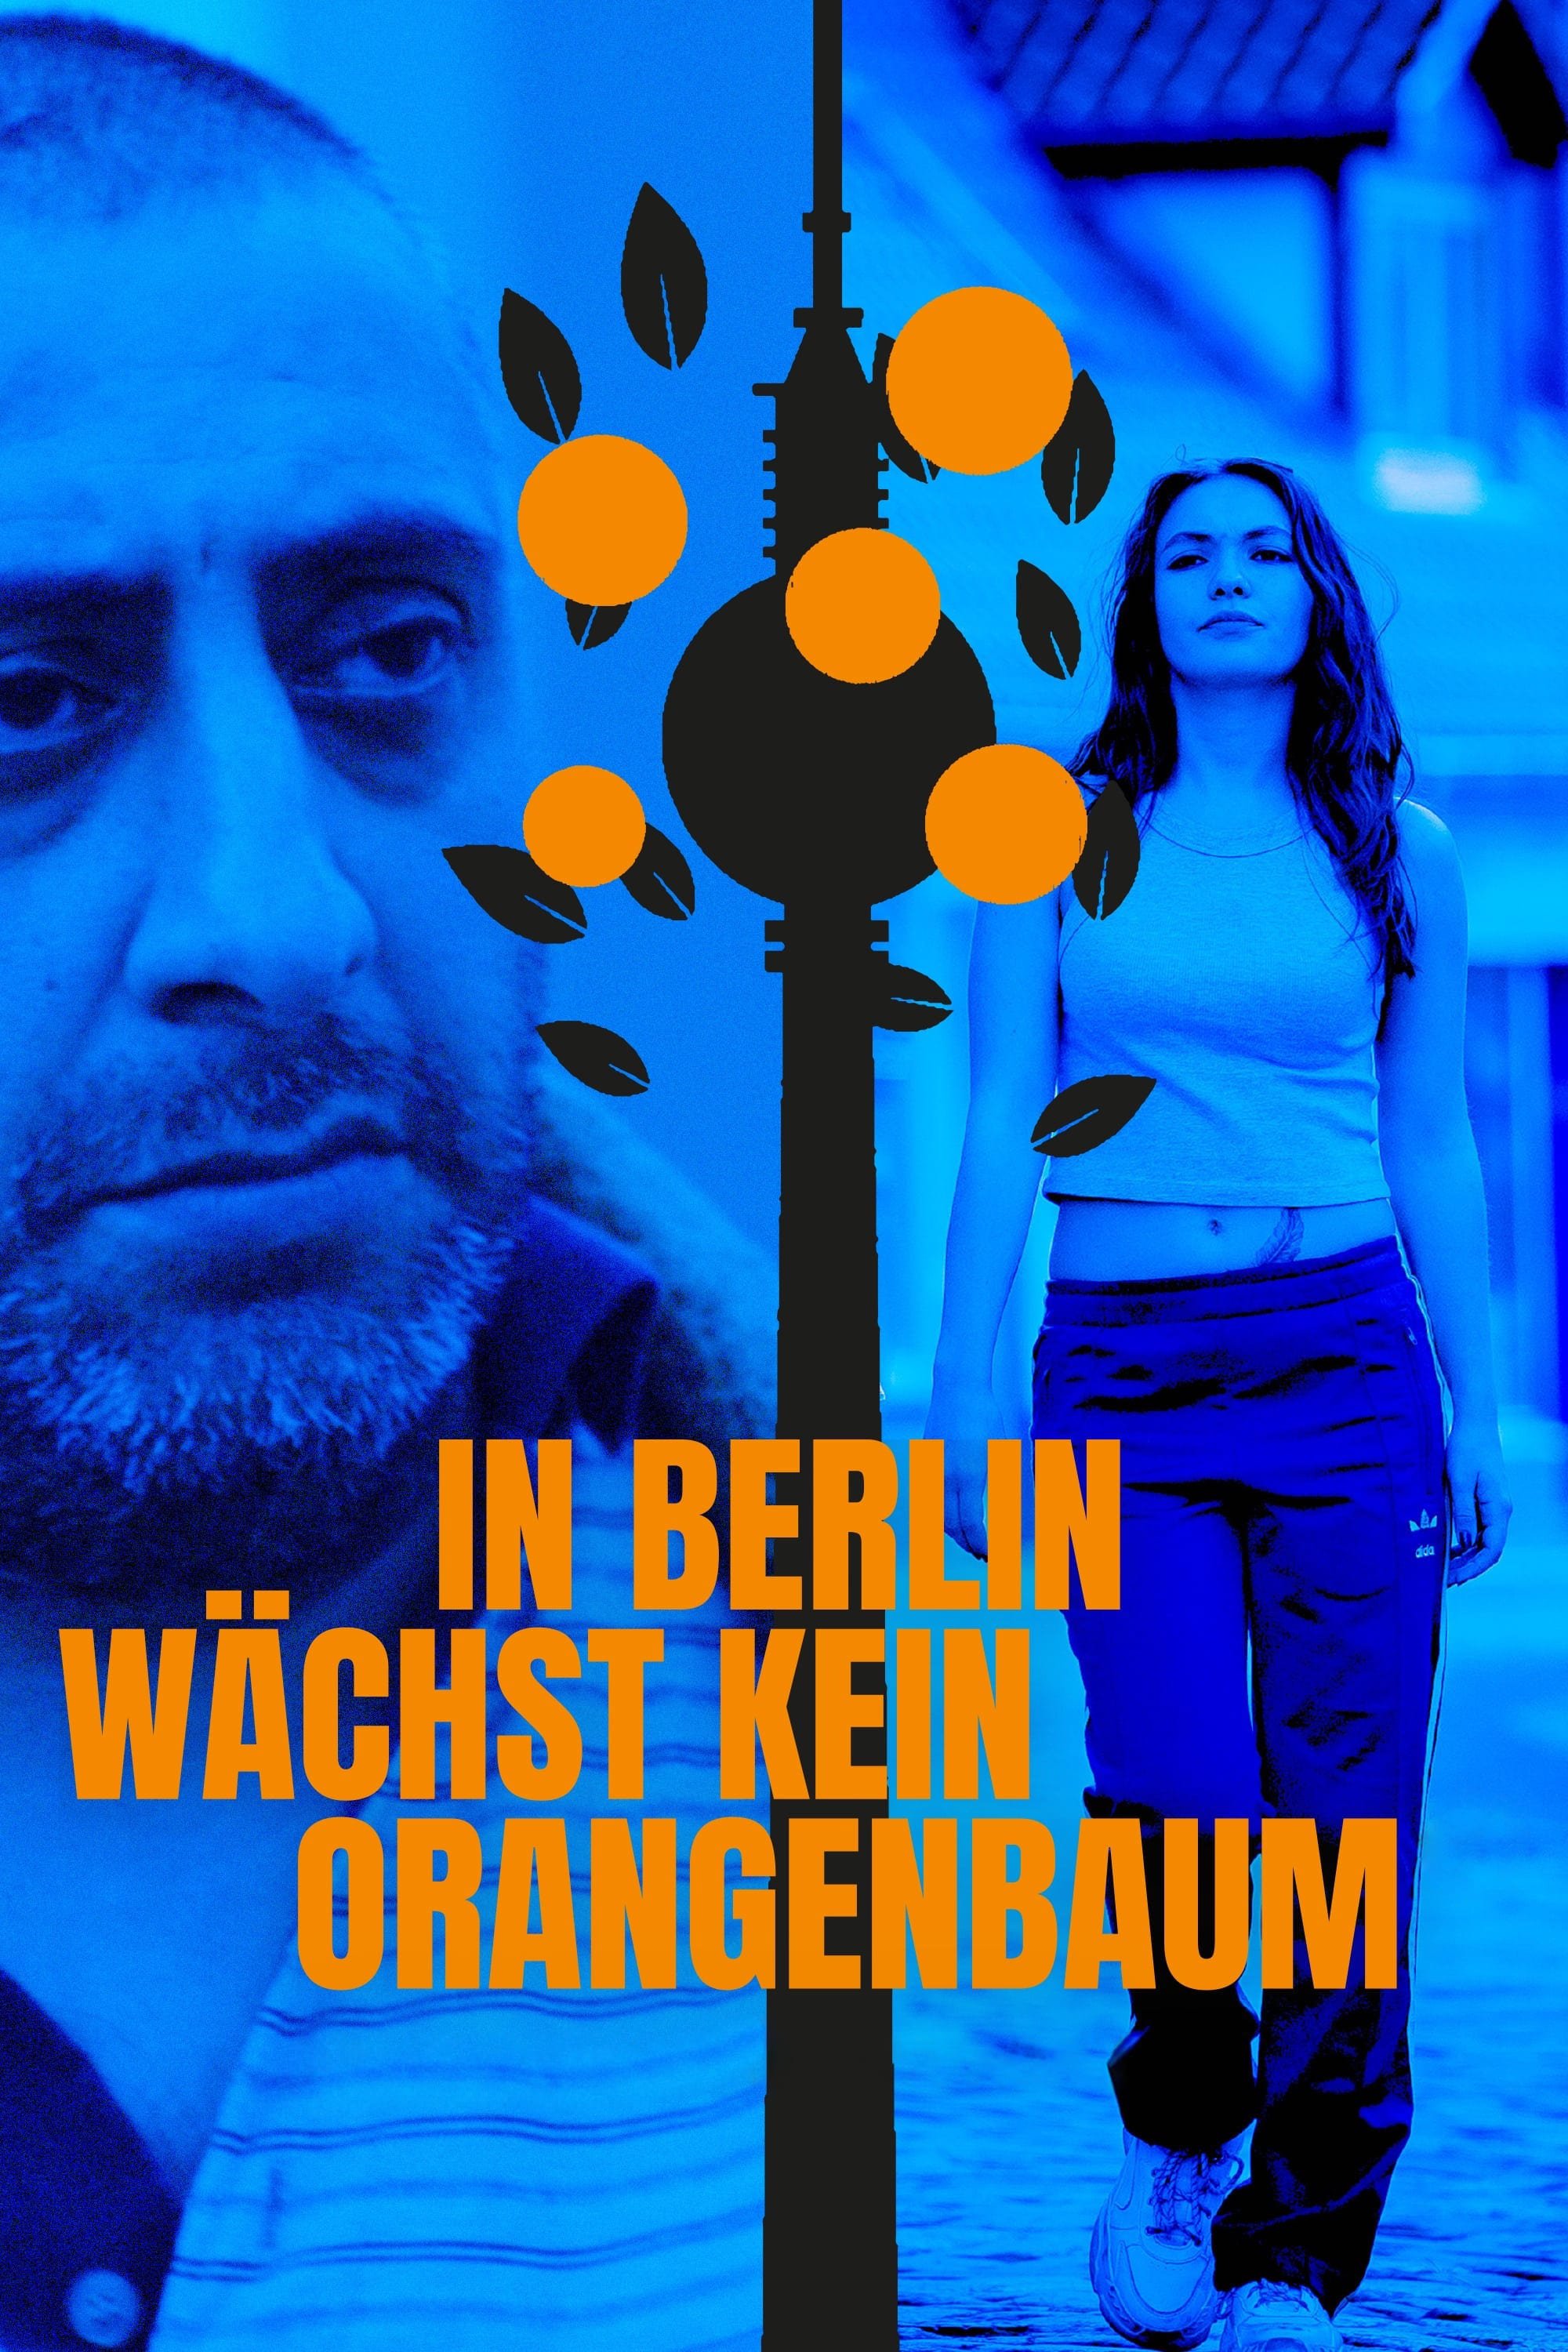 In Berlin wächst kein Orangenbaum (2020)